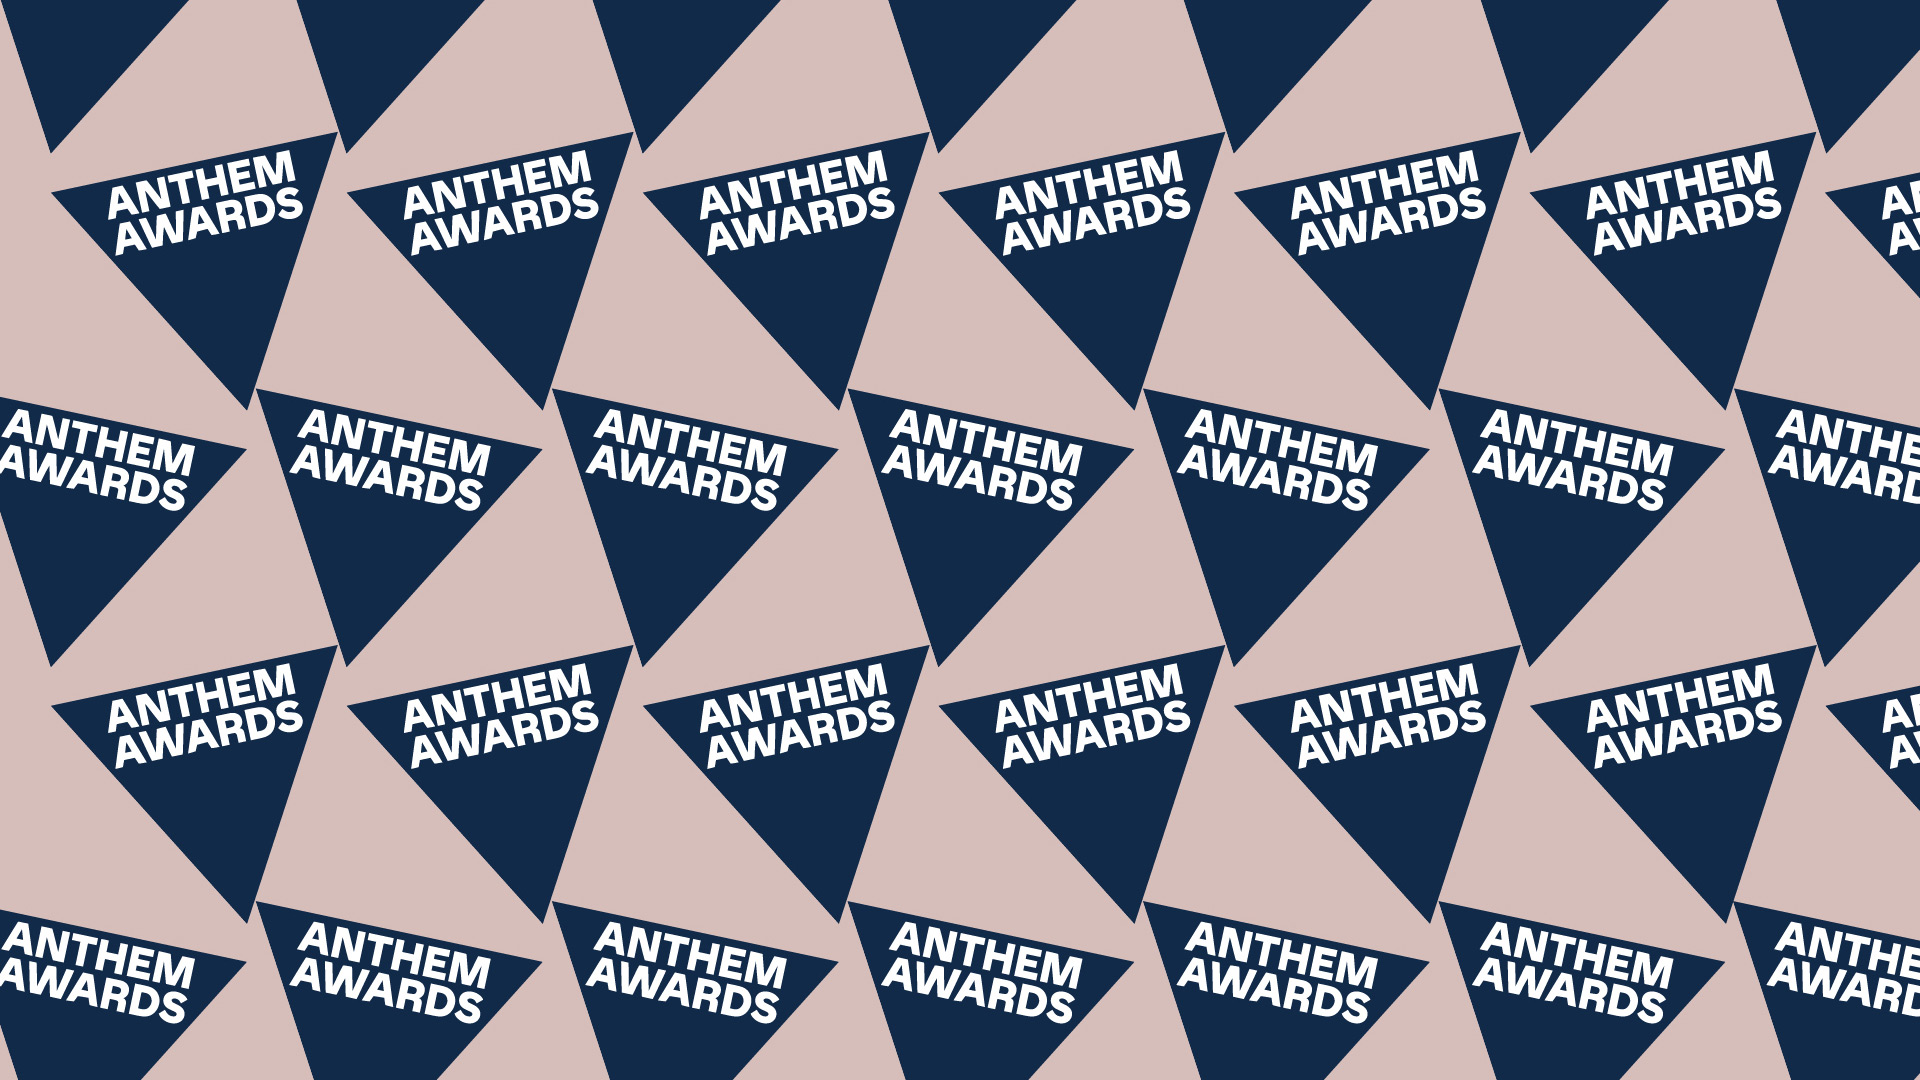 DEPT® gewinnt 10 Anthem Awards für Purpose-orientierte Arbeit